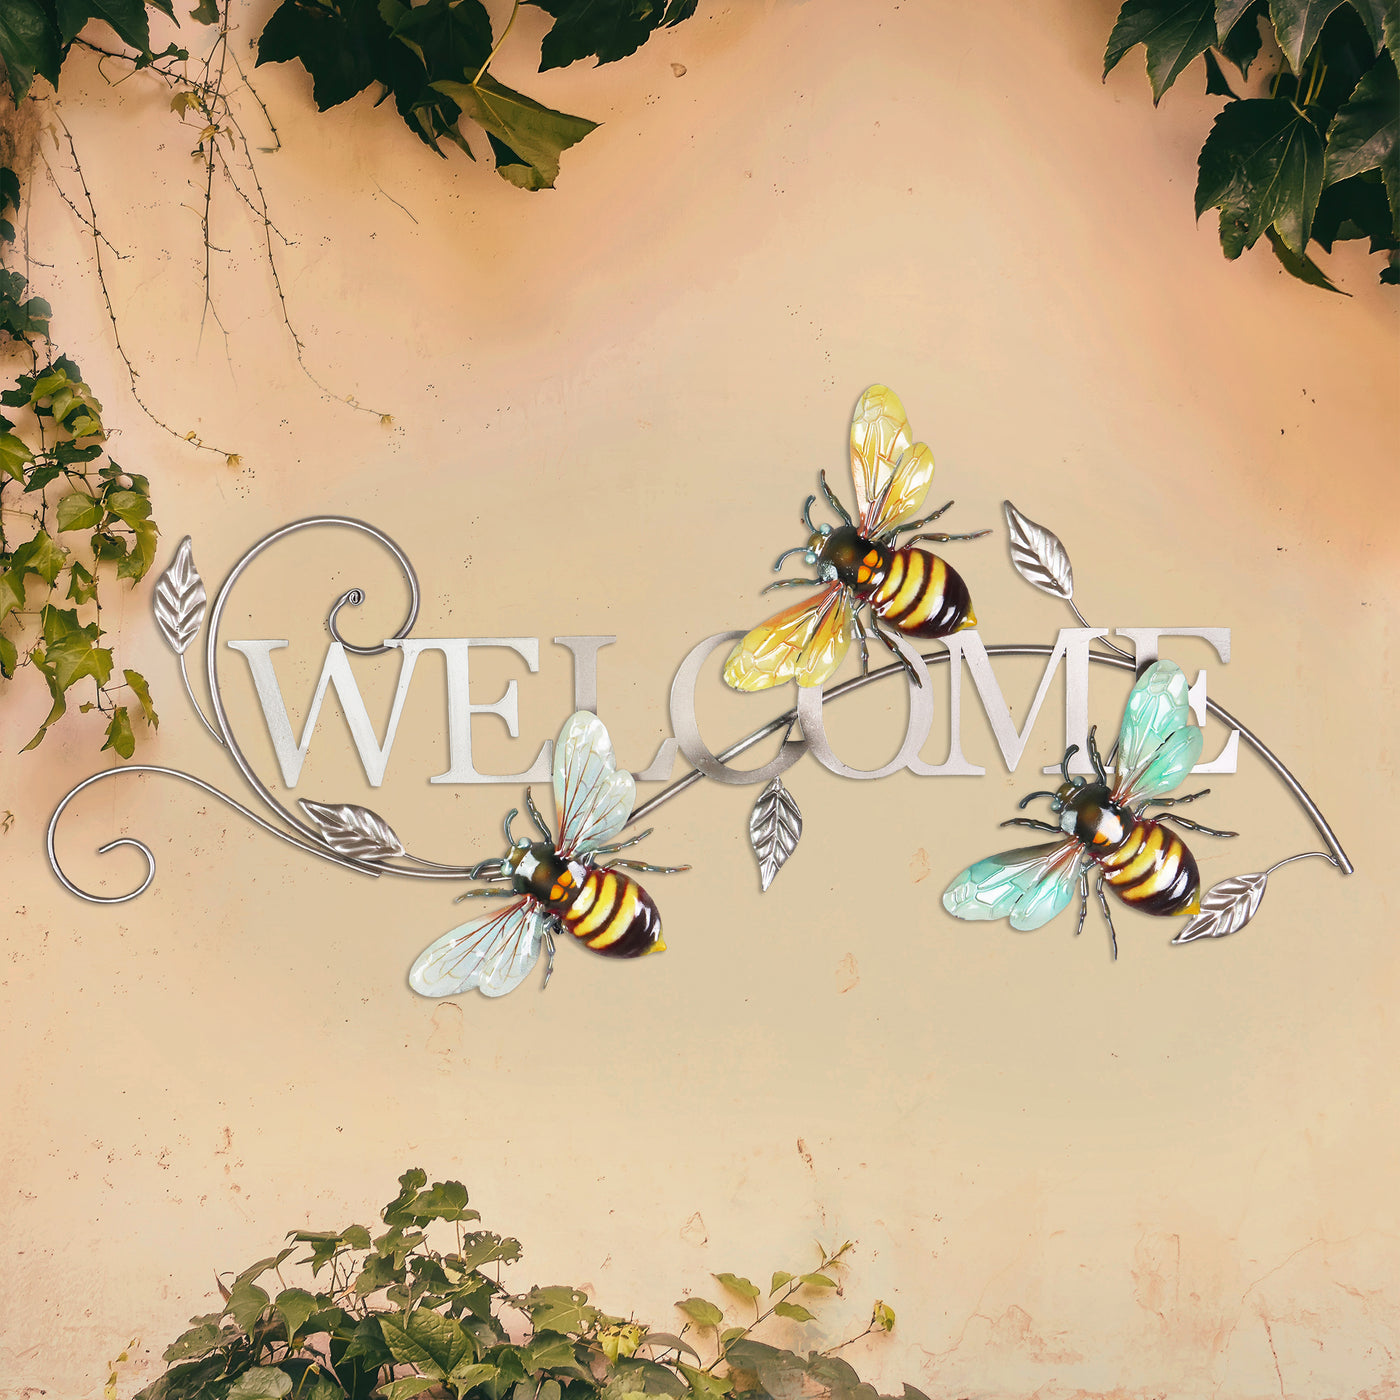 Bee Kind Wall Sign, Wall Decor, Bee Decor, Bee Sign, Bee Themed